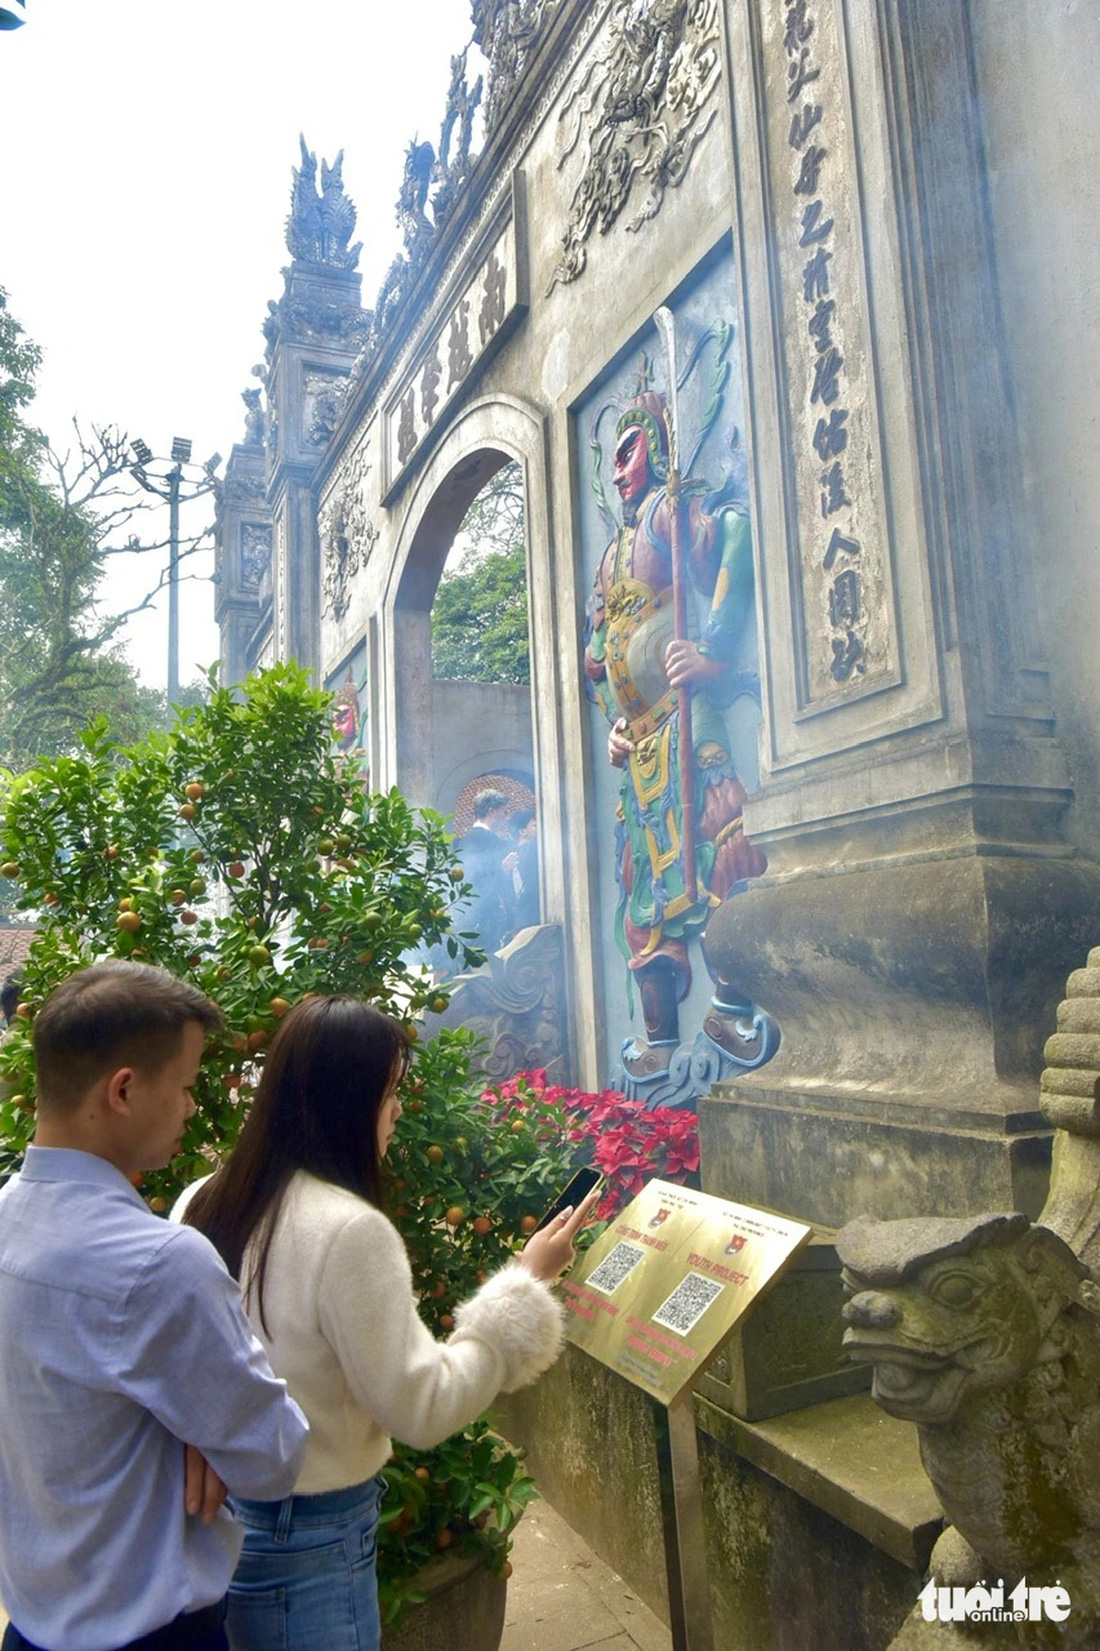 Vợ chồng chị Hảo (thị xã Phú Thọ, tỉnh Phú Thọ) quét mã để tìm hiểu thêm về thông tin di tích tại đền Thượng - Ảnh: T.T.D.